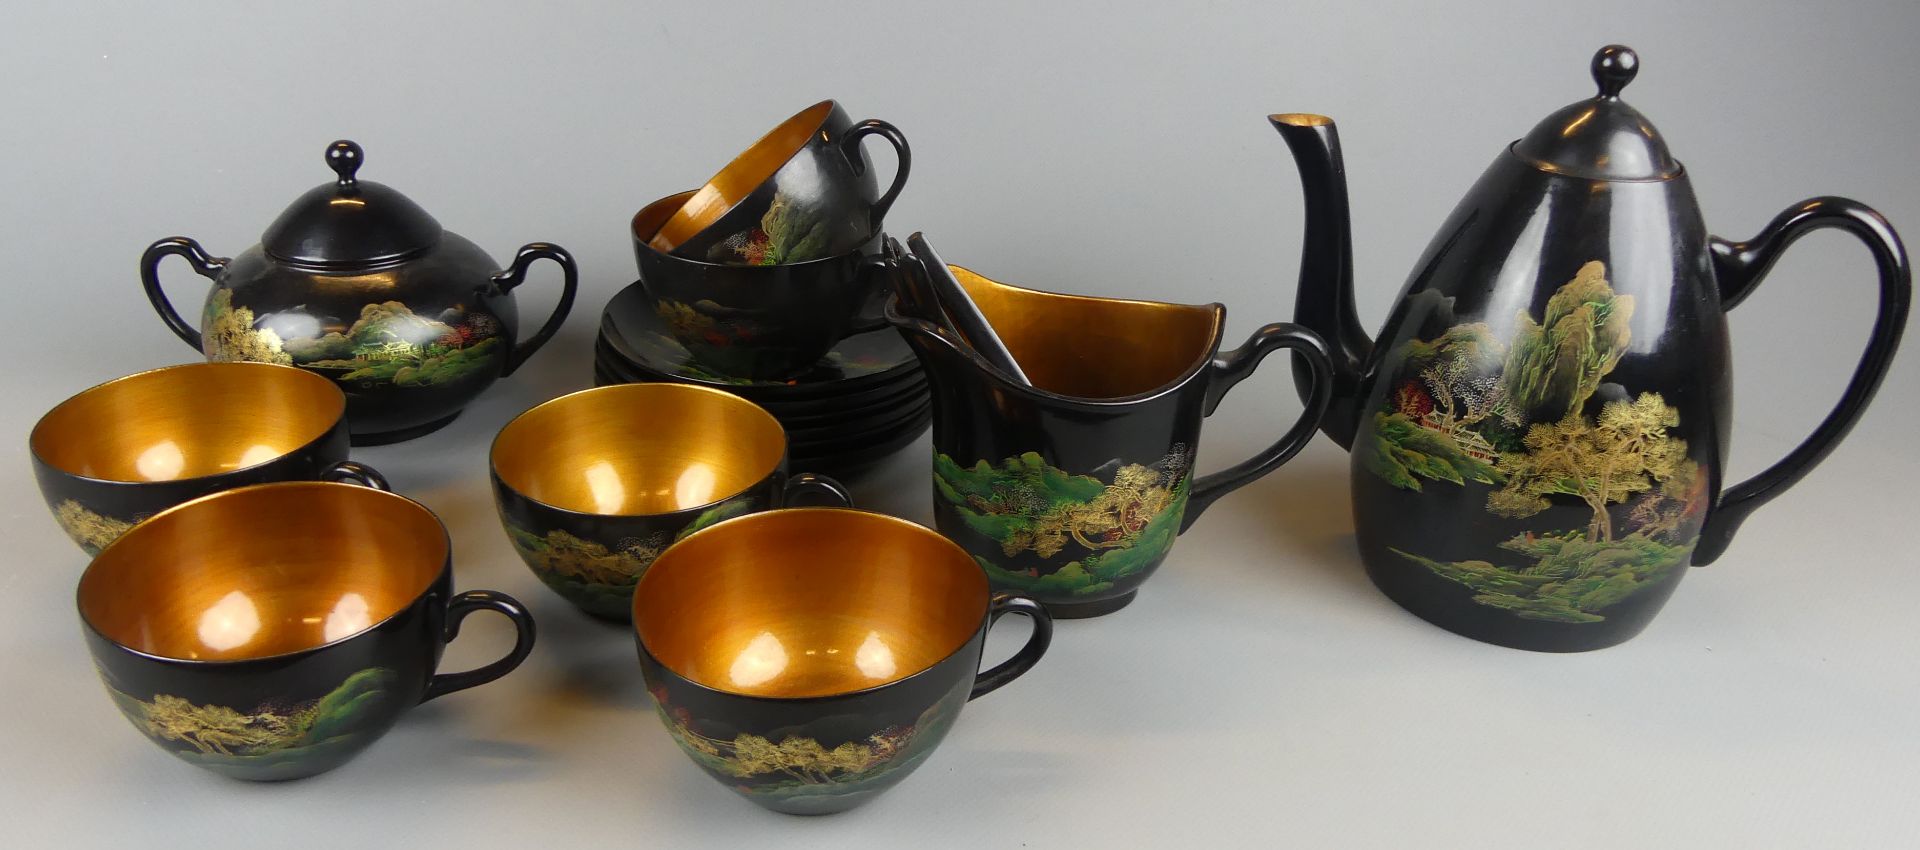 Teeset für 6 Personen, schwarz, leichten Holz, innen goldfarben, aufwendig bemalt,